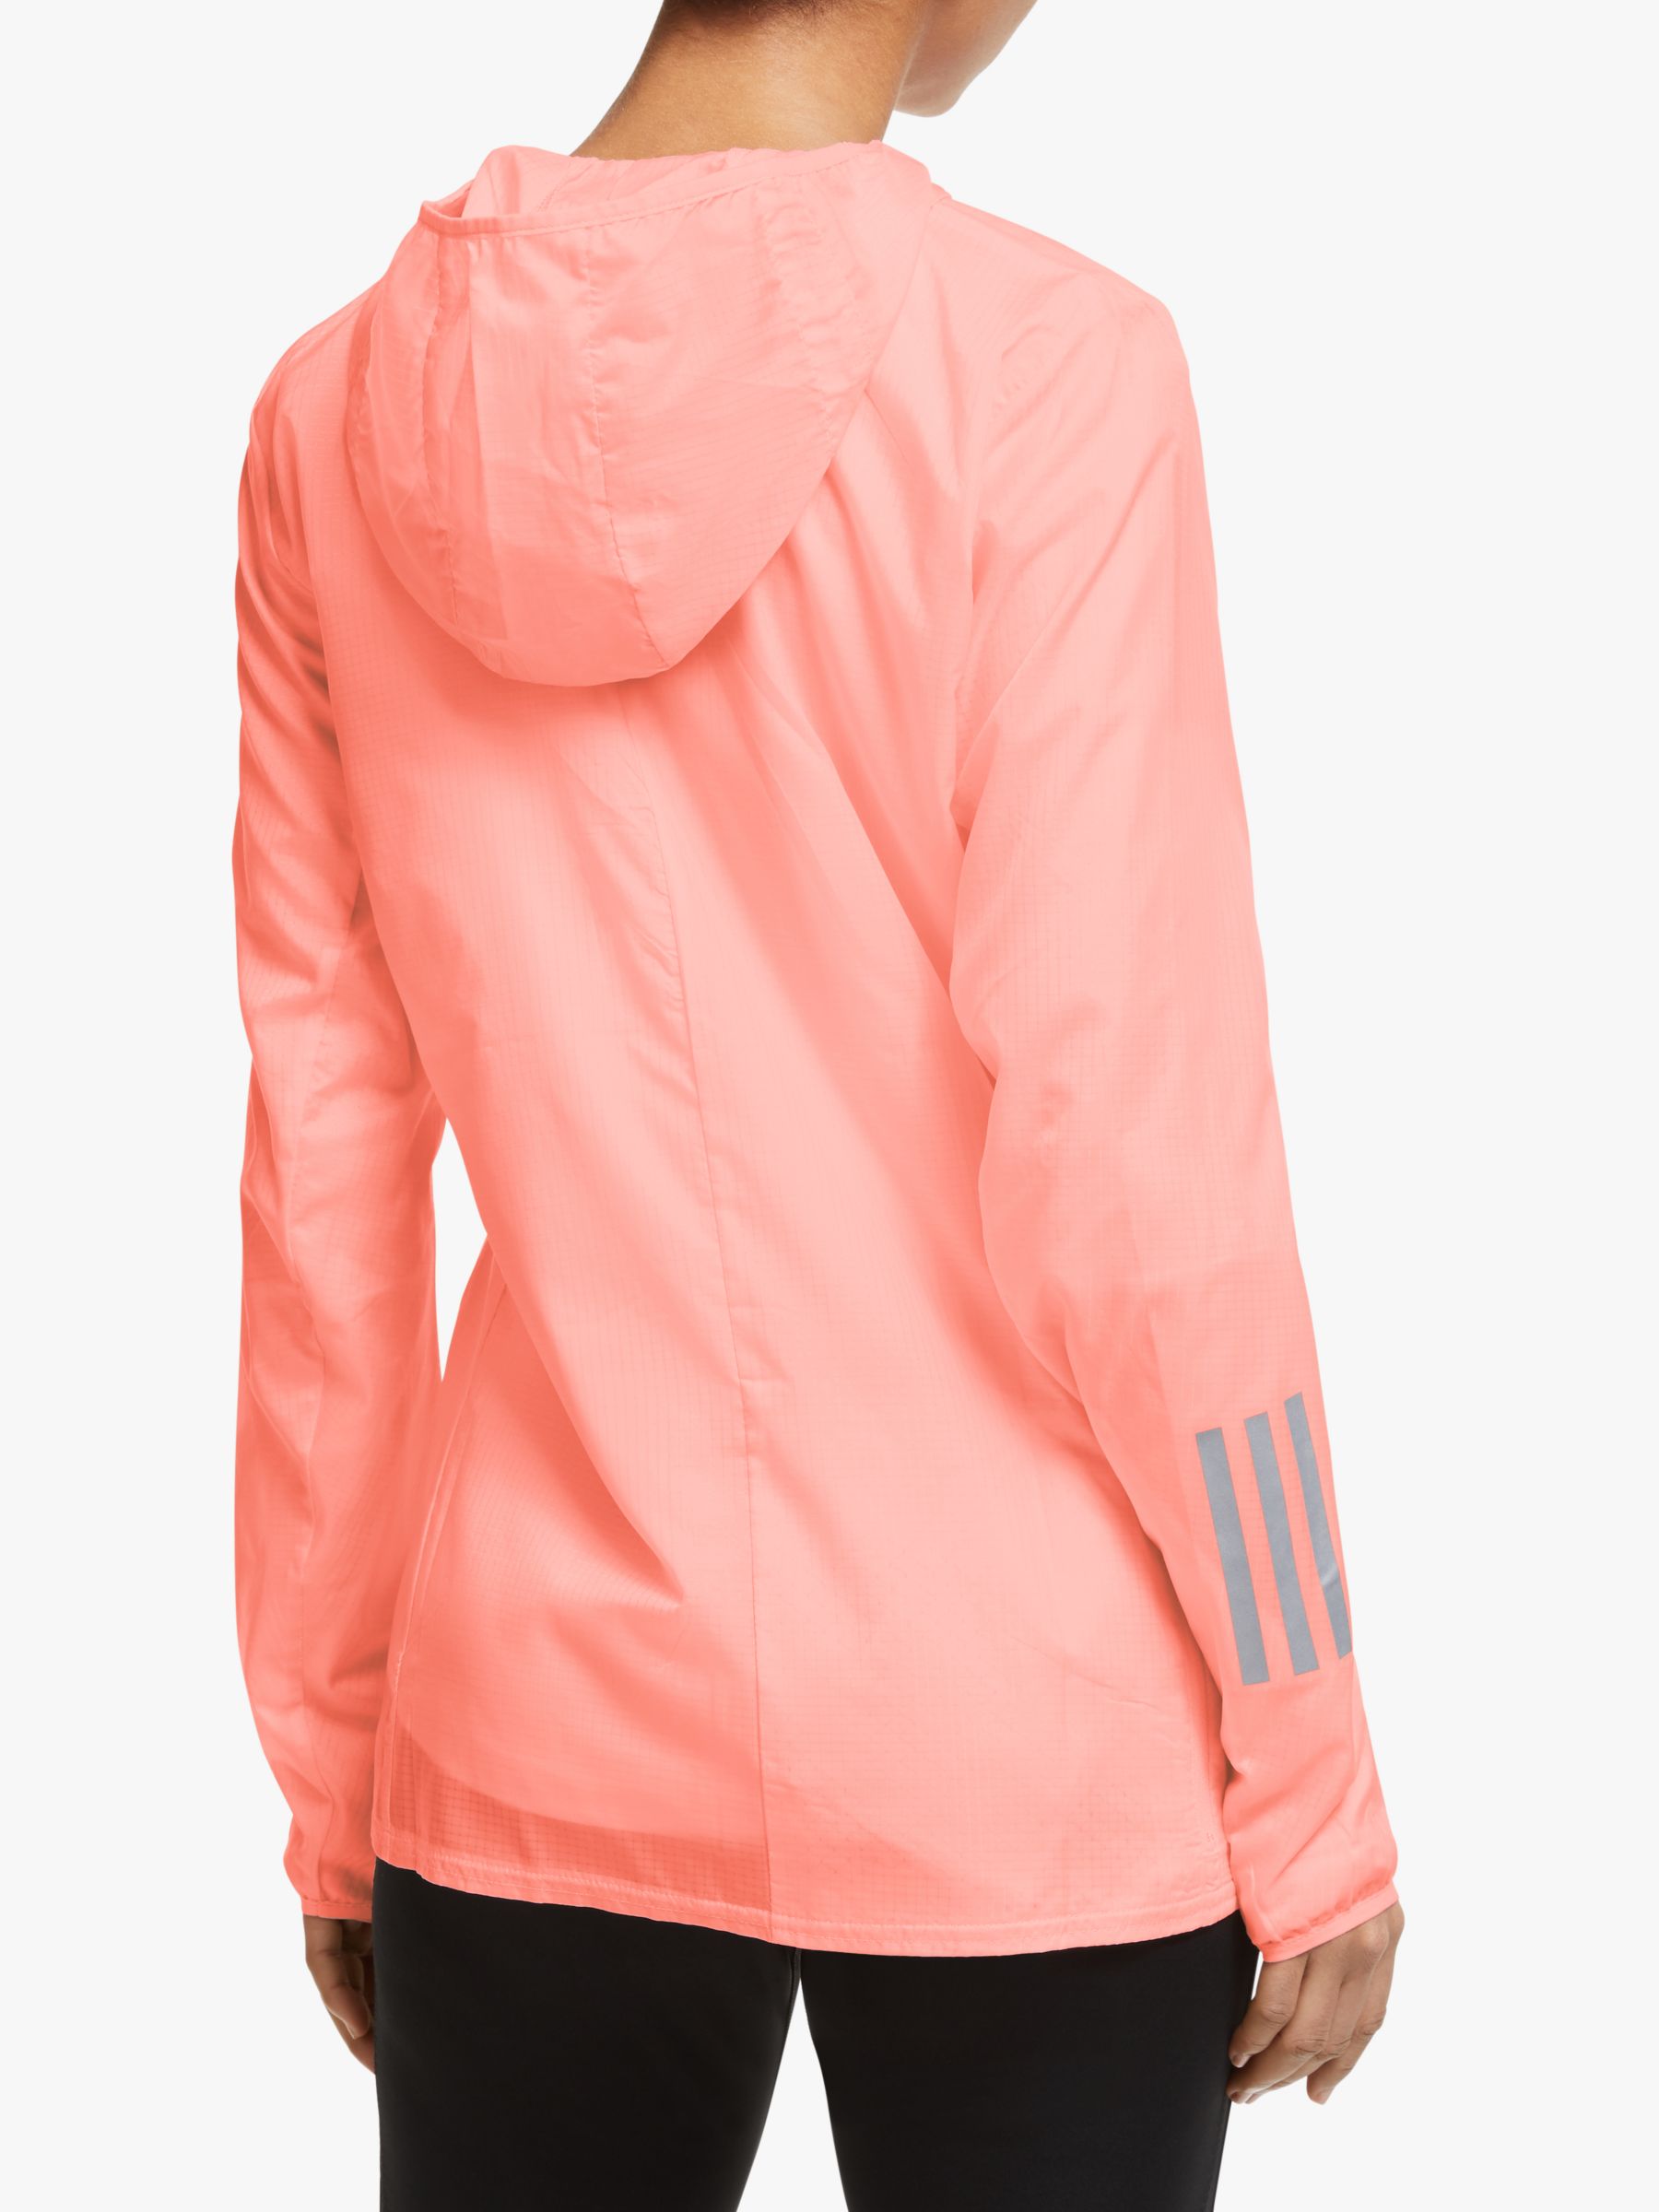 adidas glow pink jacket